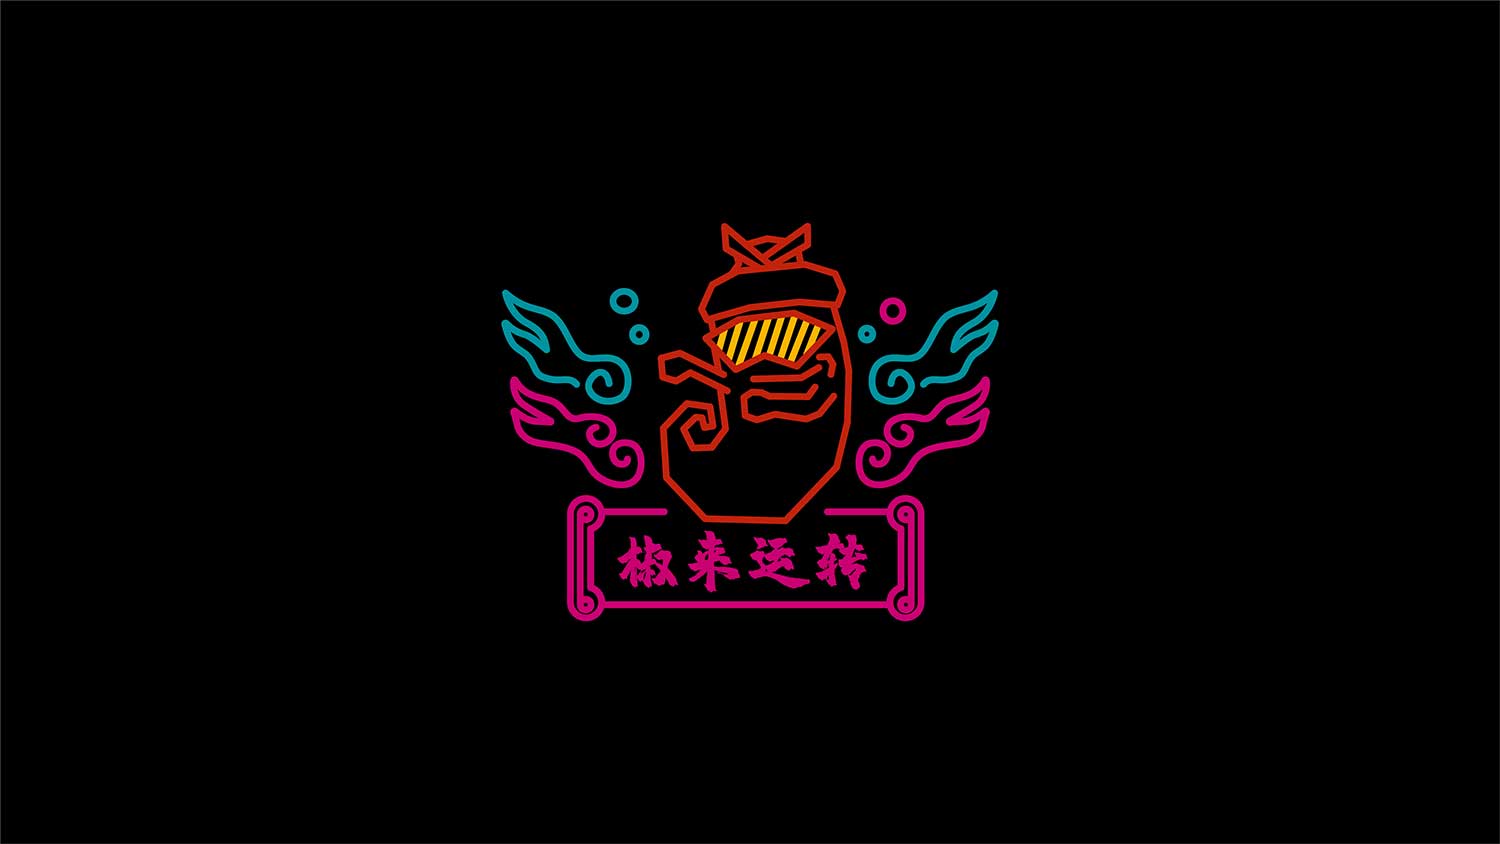 南京餐饮VI设计 南京LOGO设计 餐饮包装设计 南京VI设计